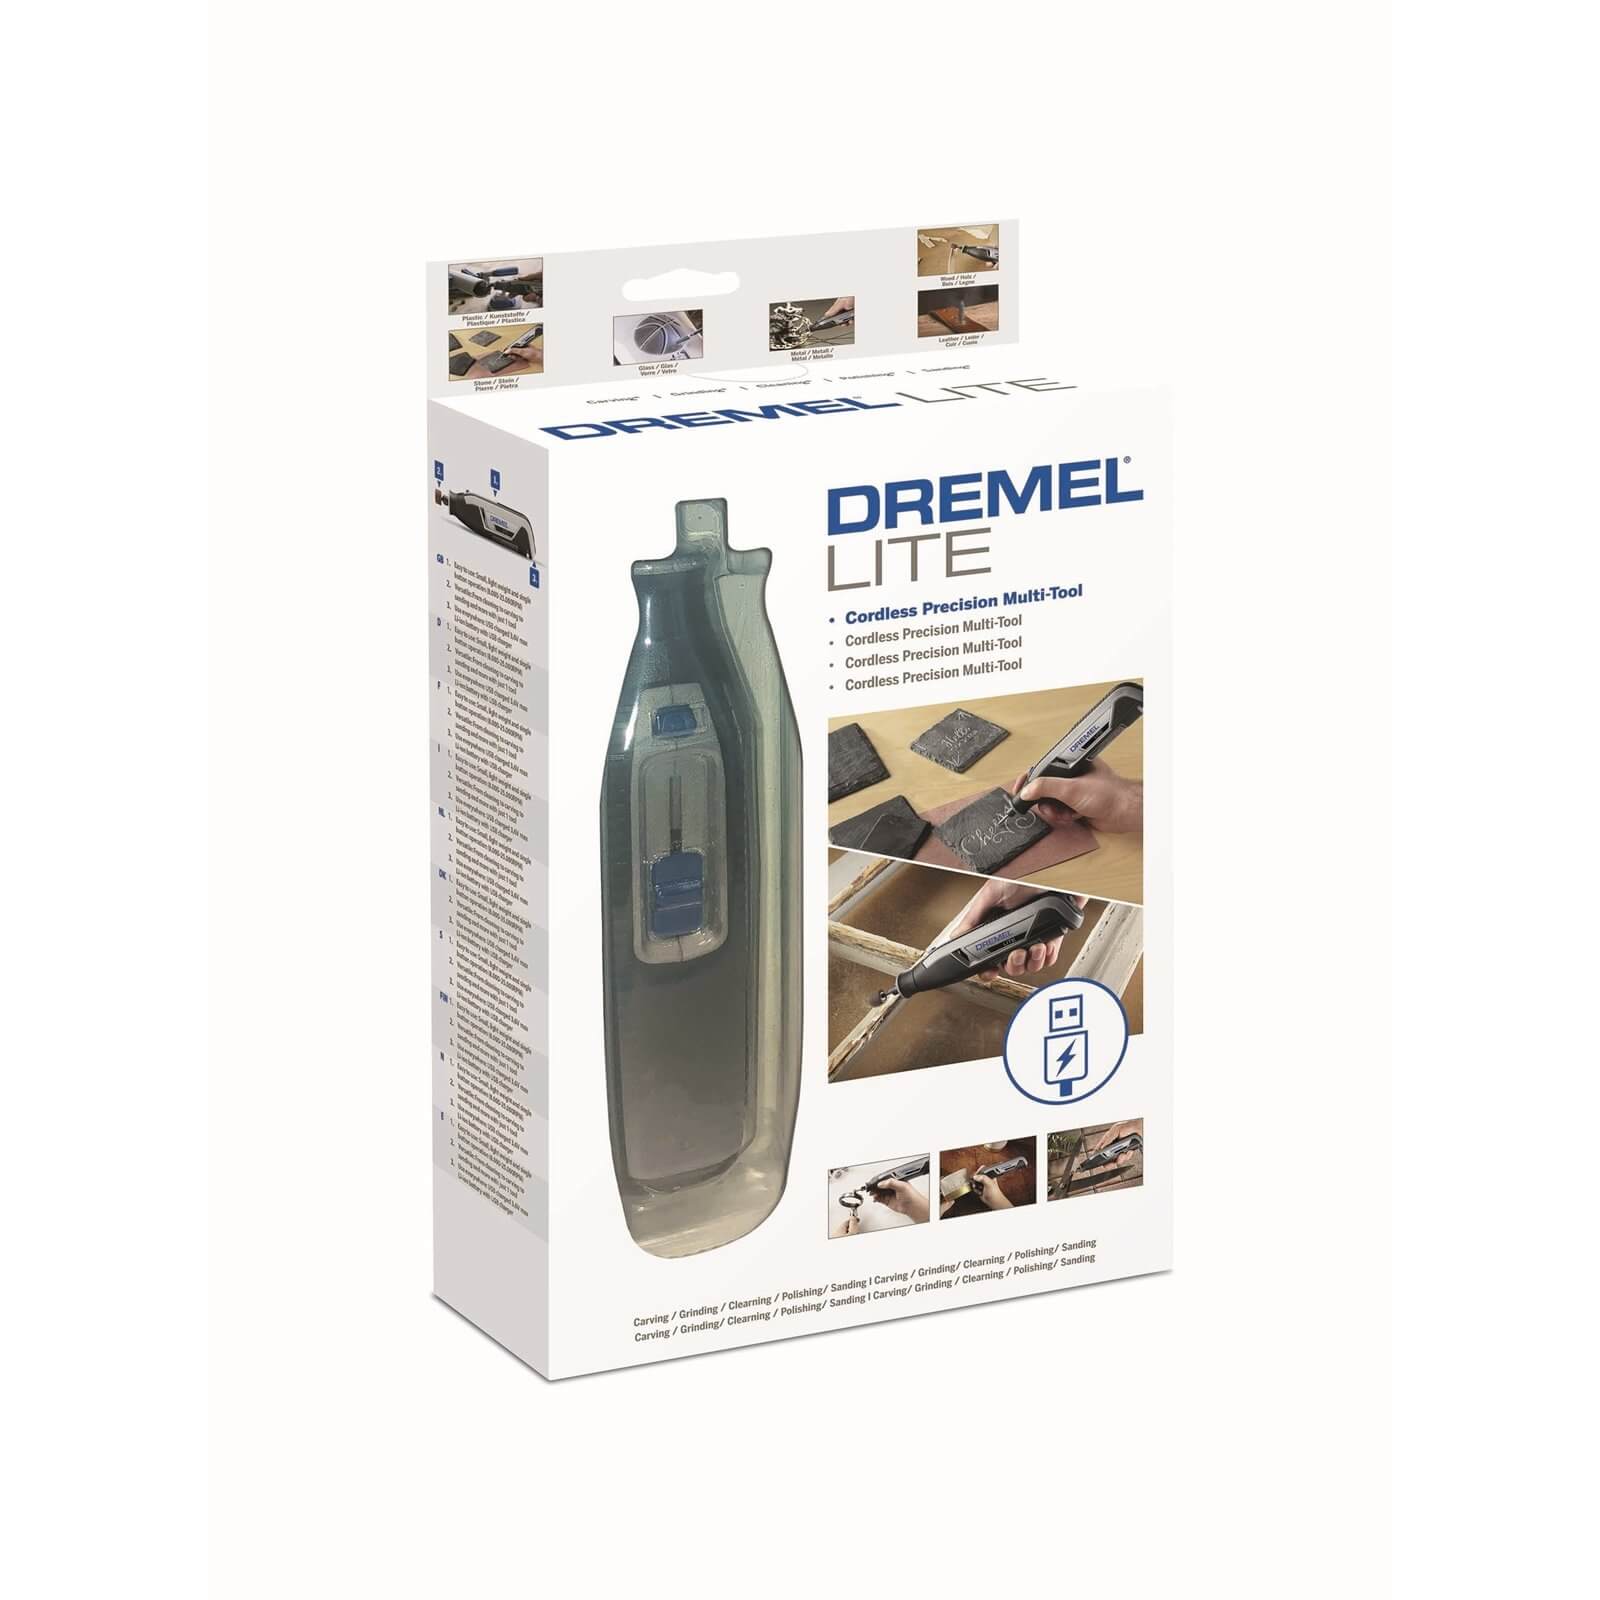 Dremel Lite 7760 Cordless Multi-Tool Kit